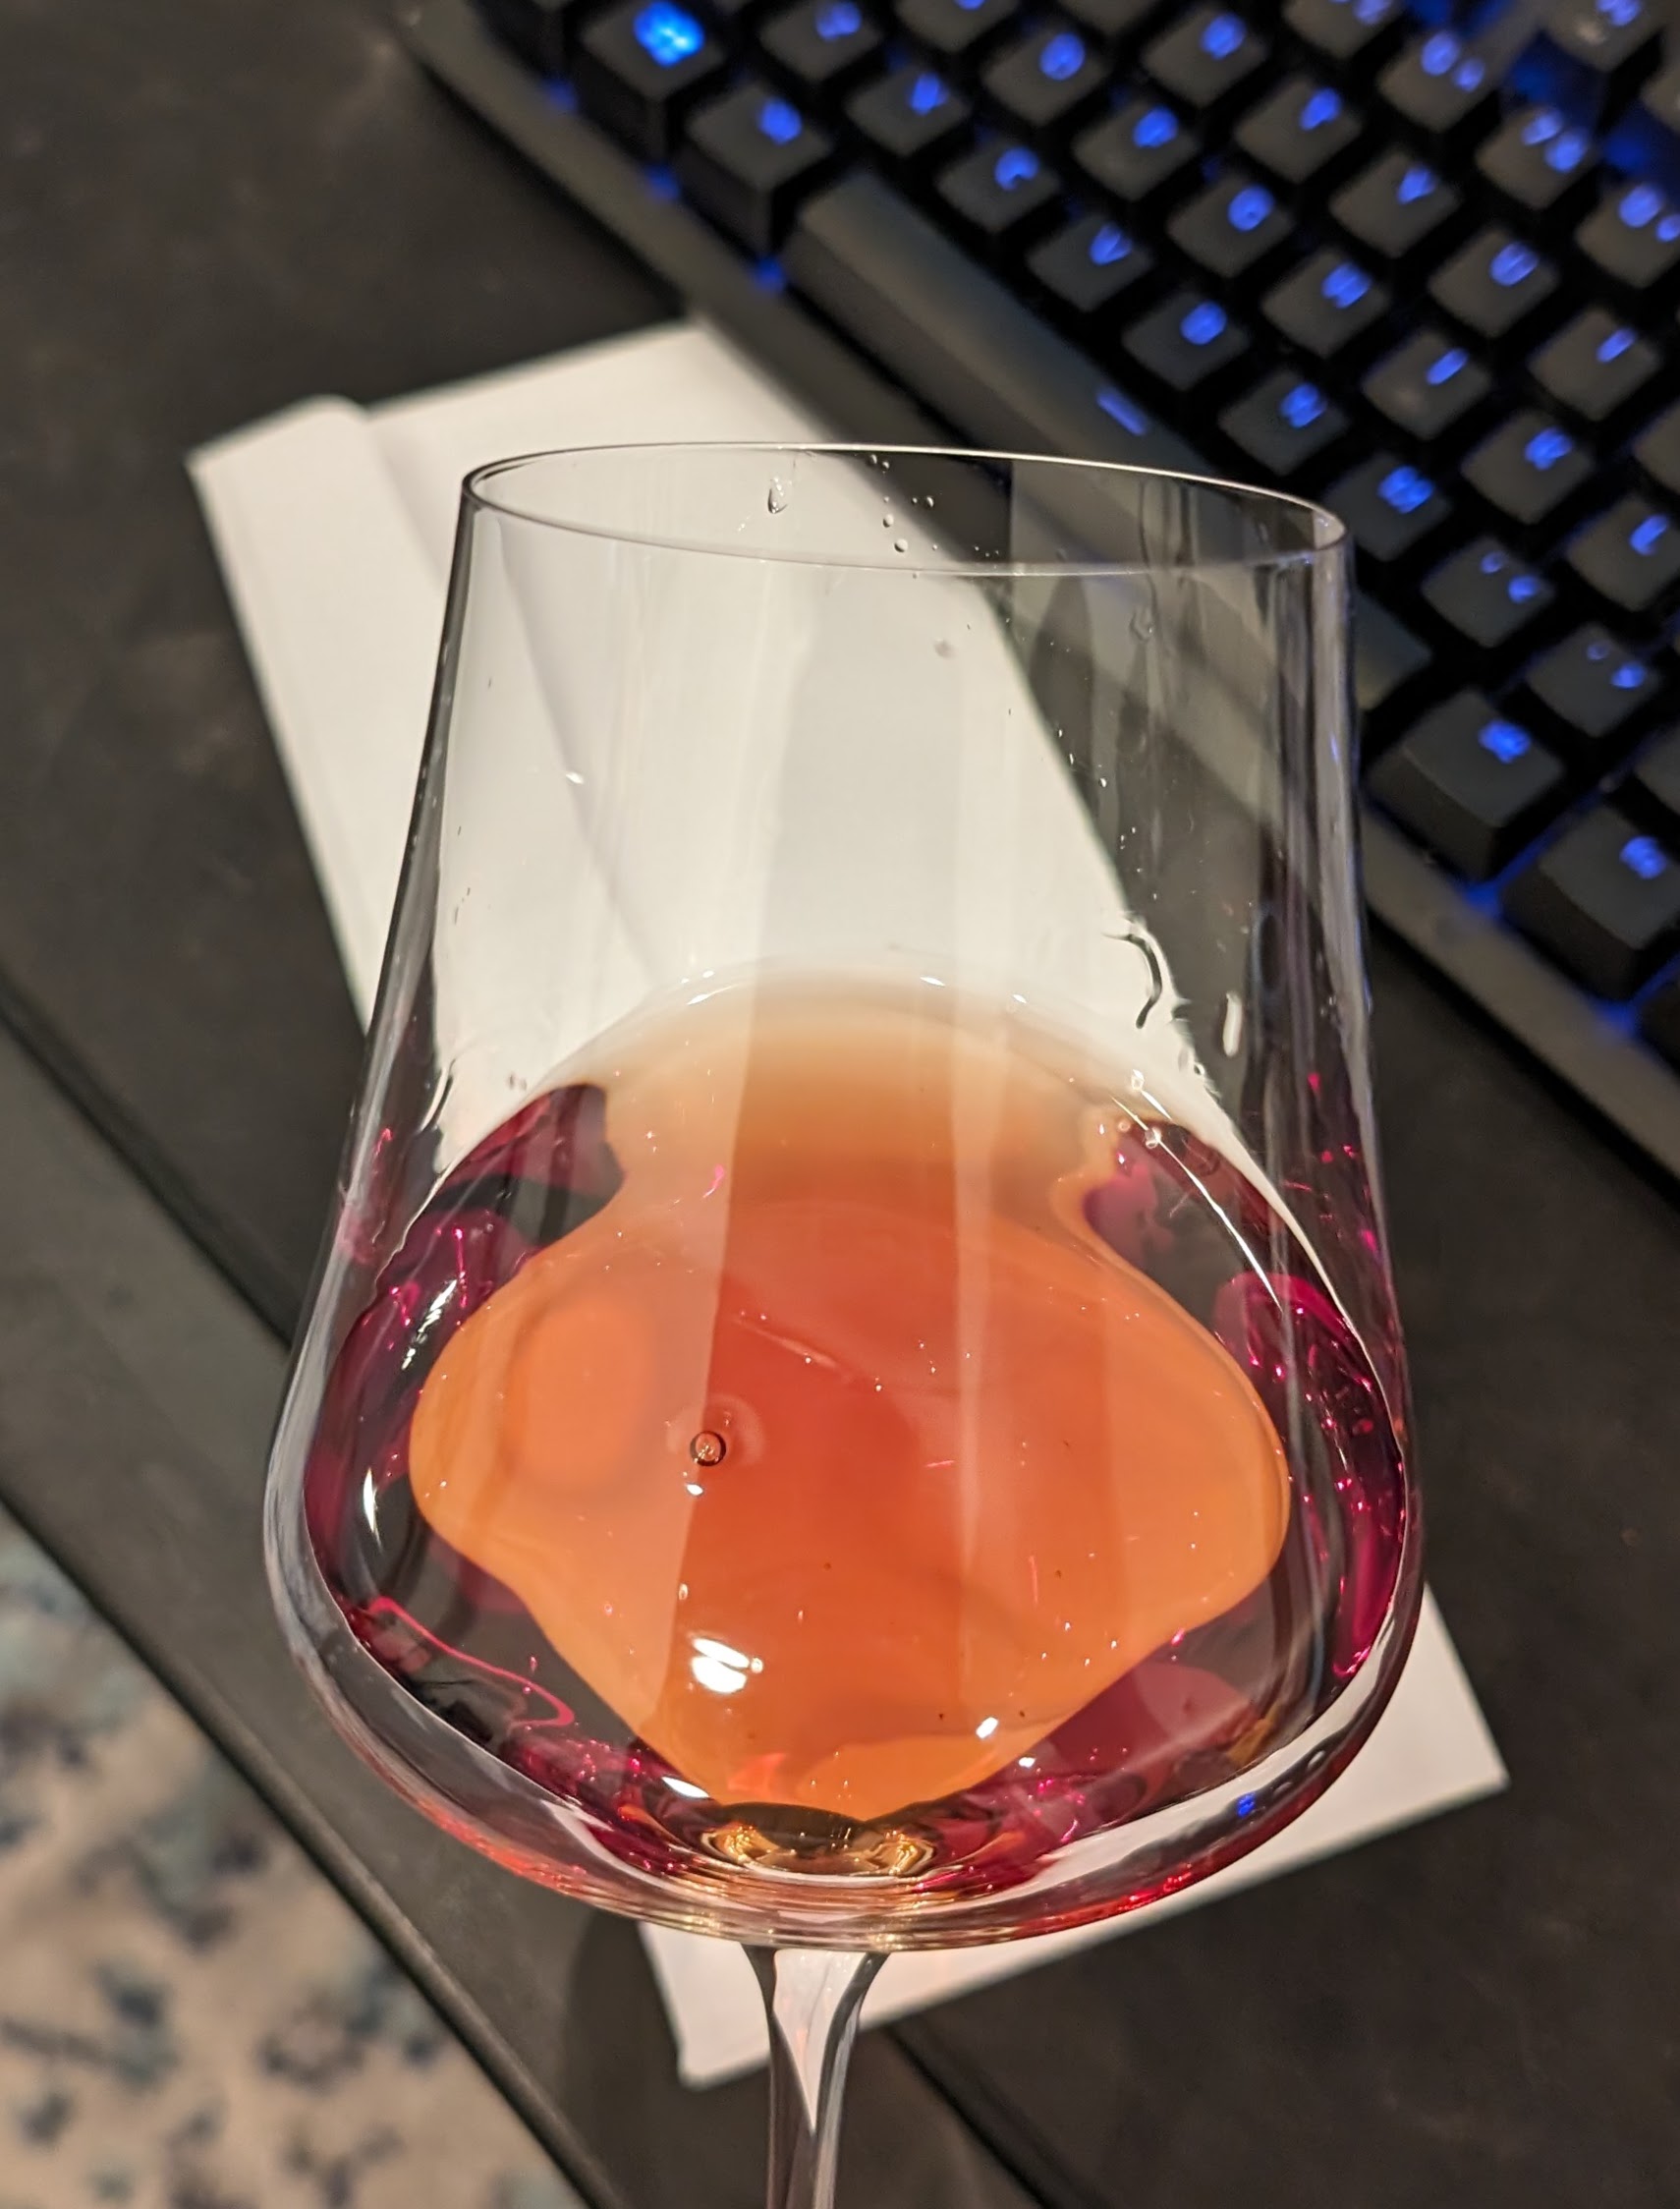 Red-amber color of Peller Estates Cabernet Franc Ice Wine